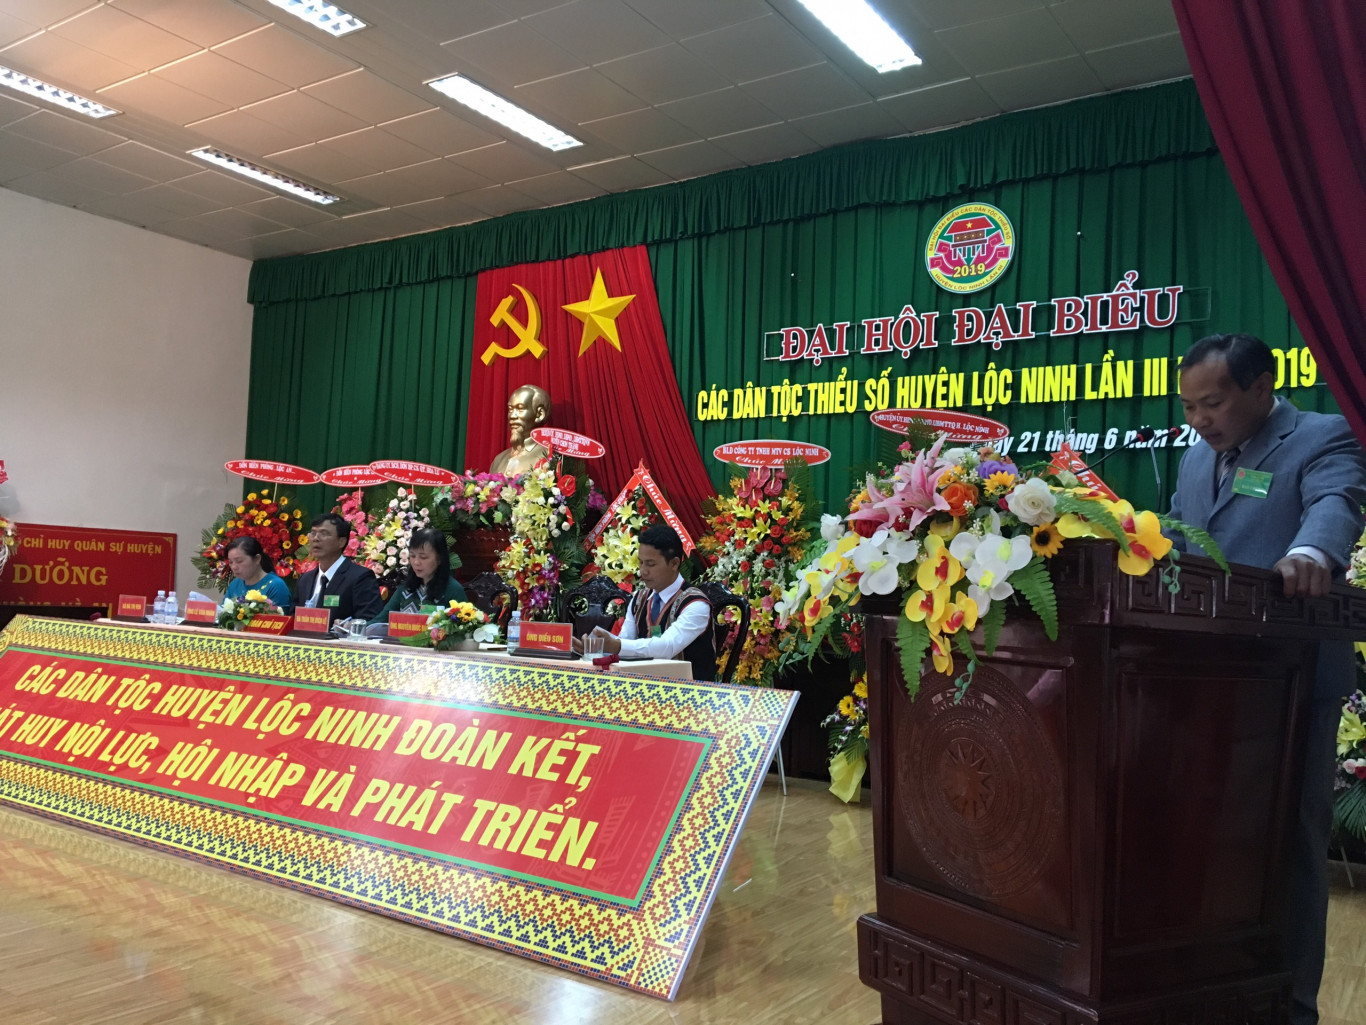 Huyện Lộc Ninh tổ chức thành công Đại hội đại biểu  các dân tộc thiểu số lần III